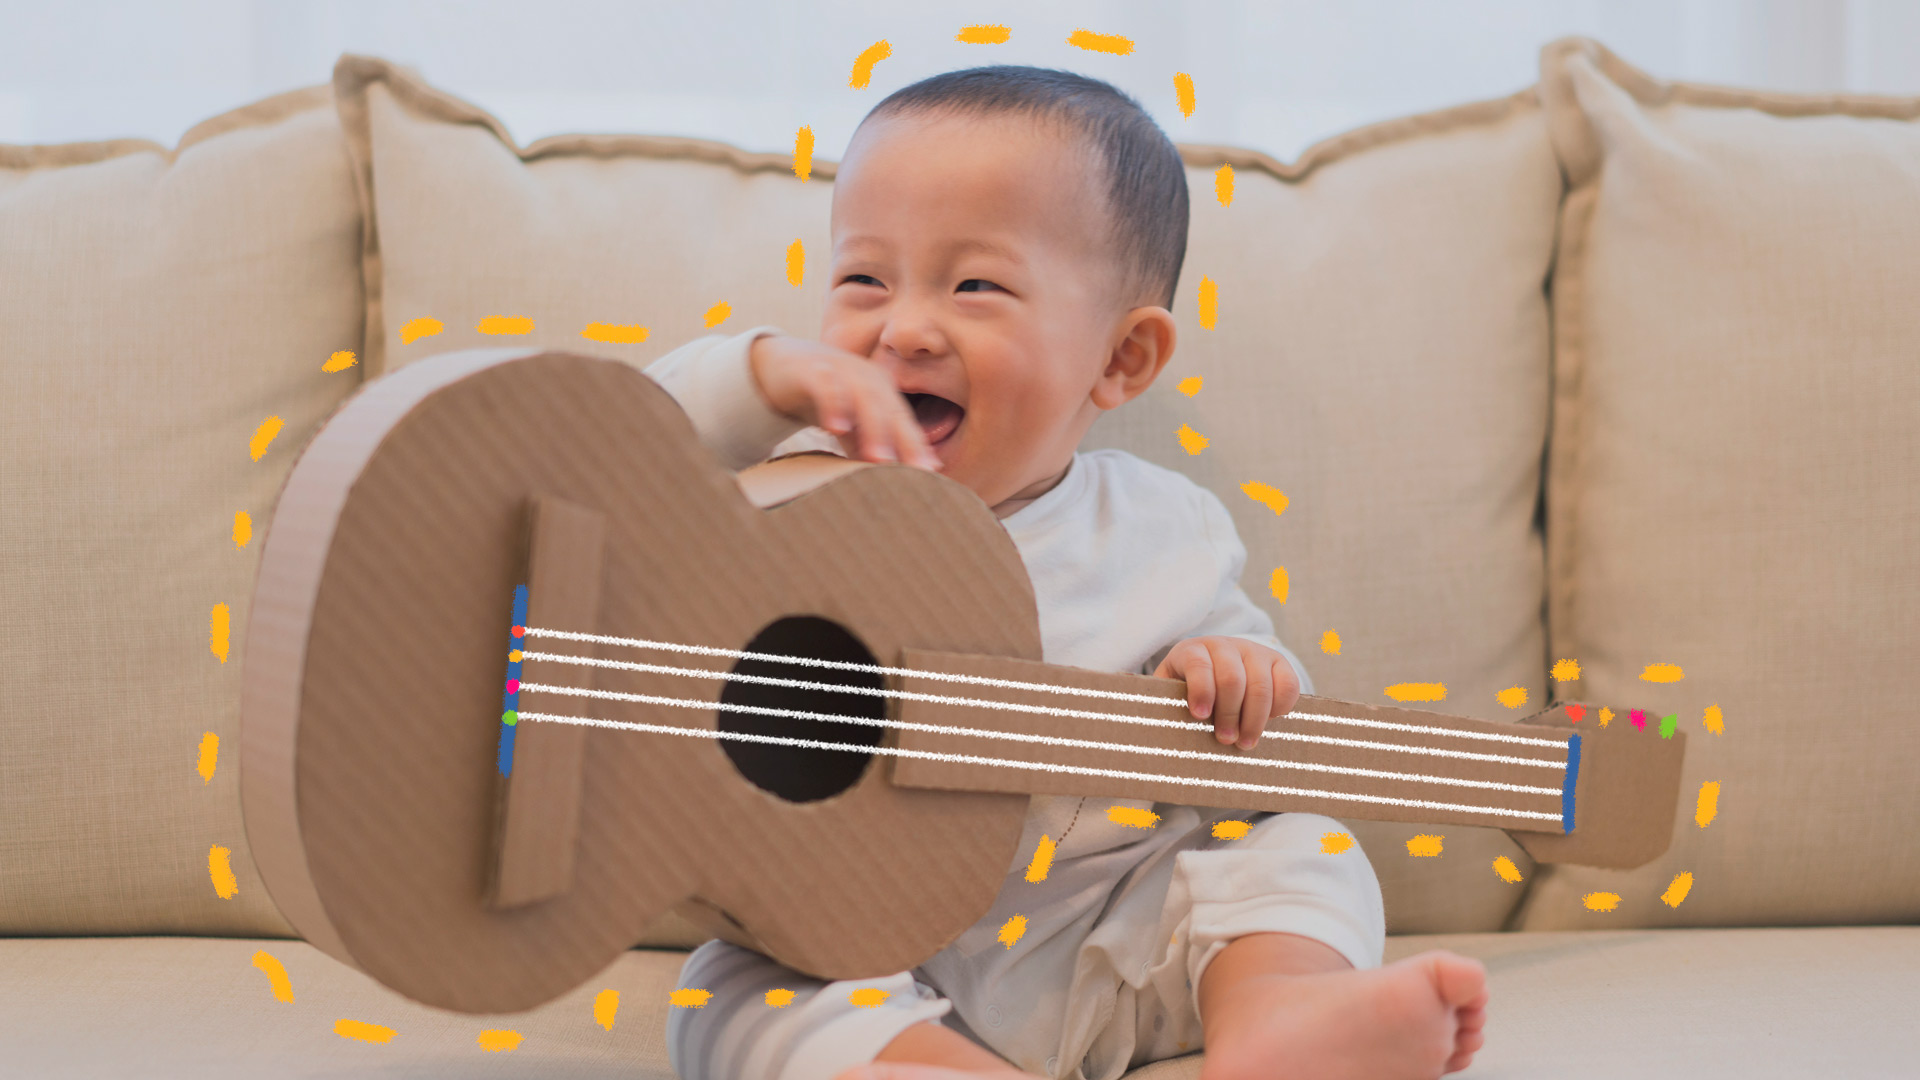 Imagem de um bebê sentado no sofá sorrindo, com um violão feito de caixa de papel